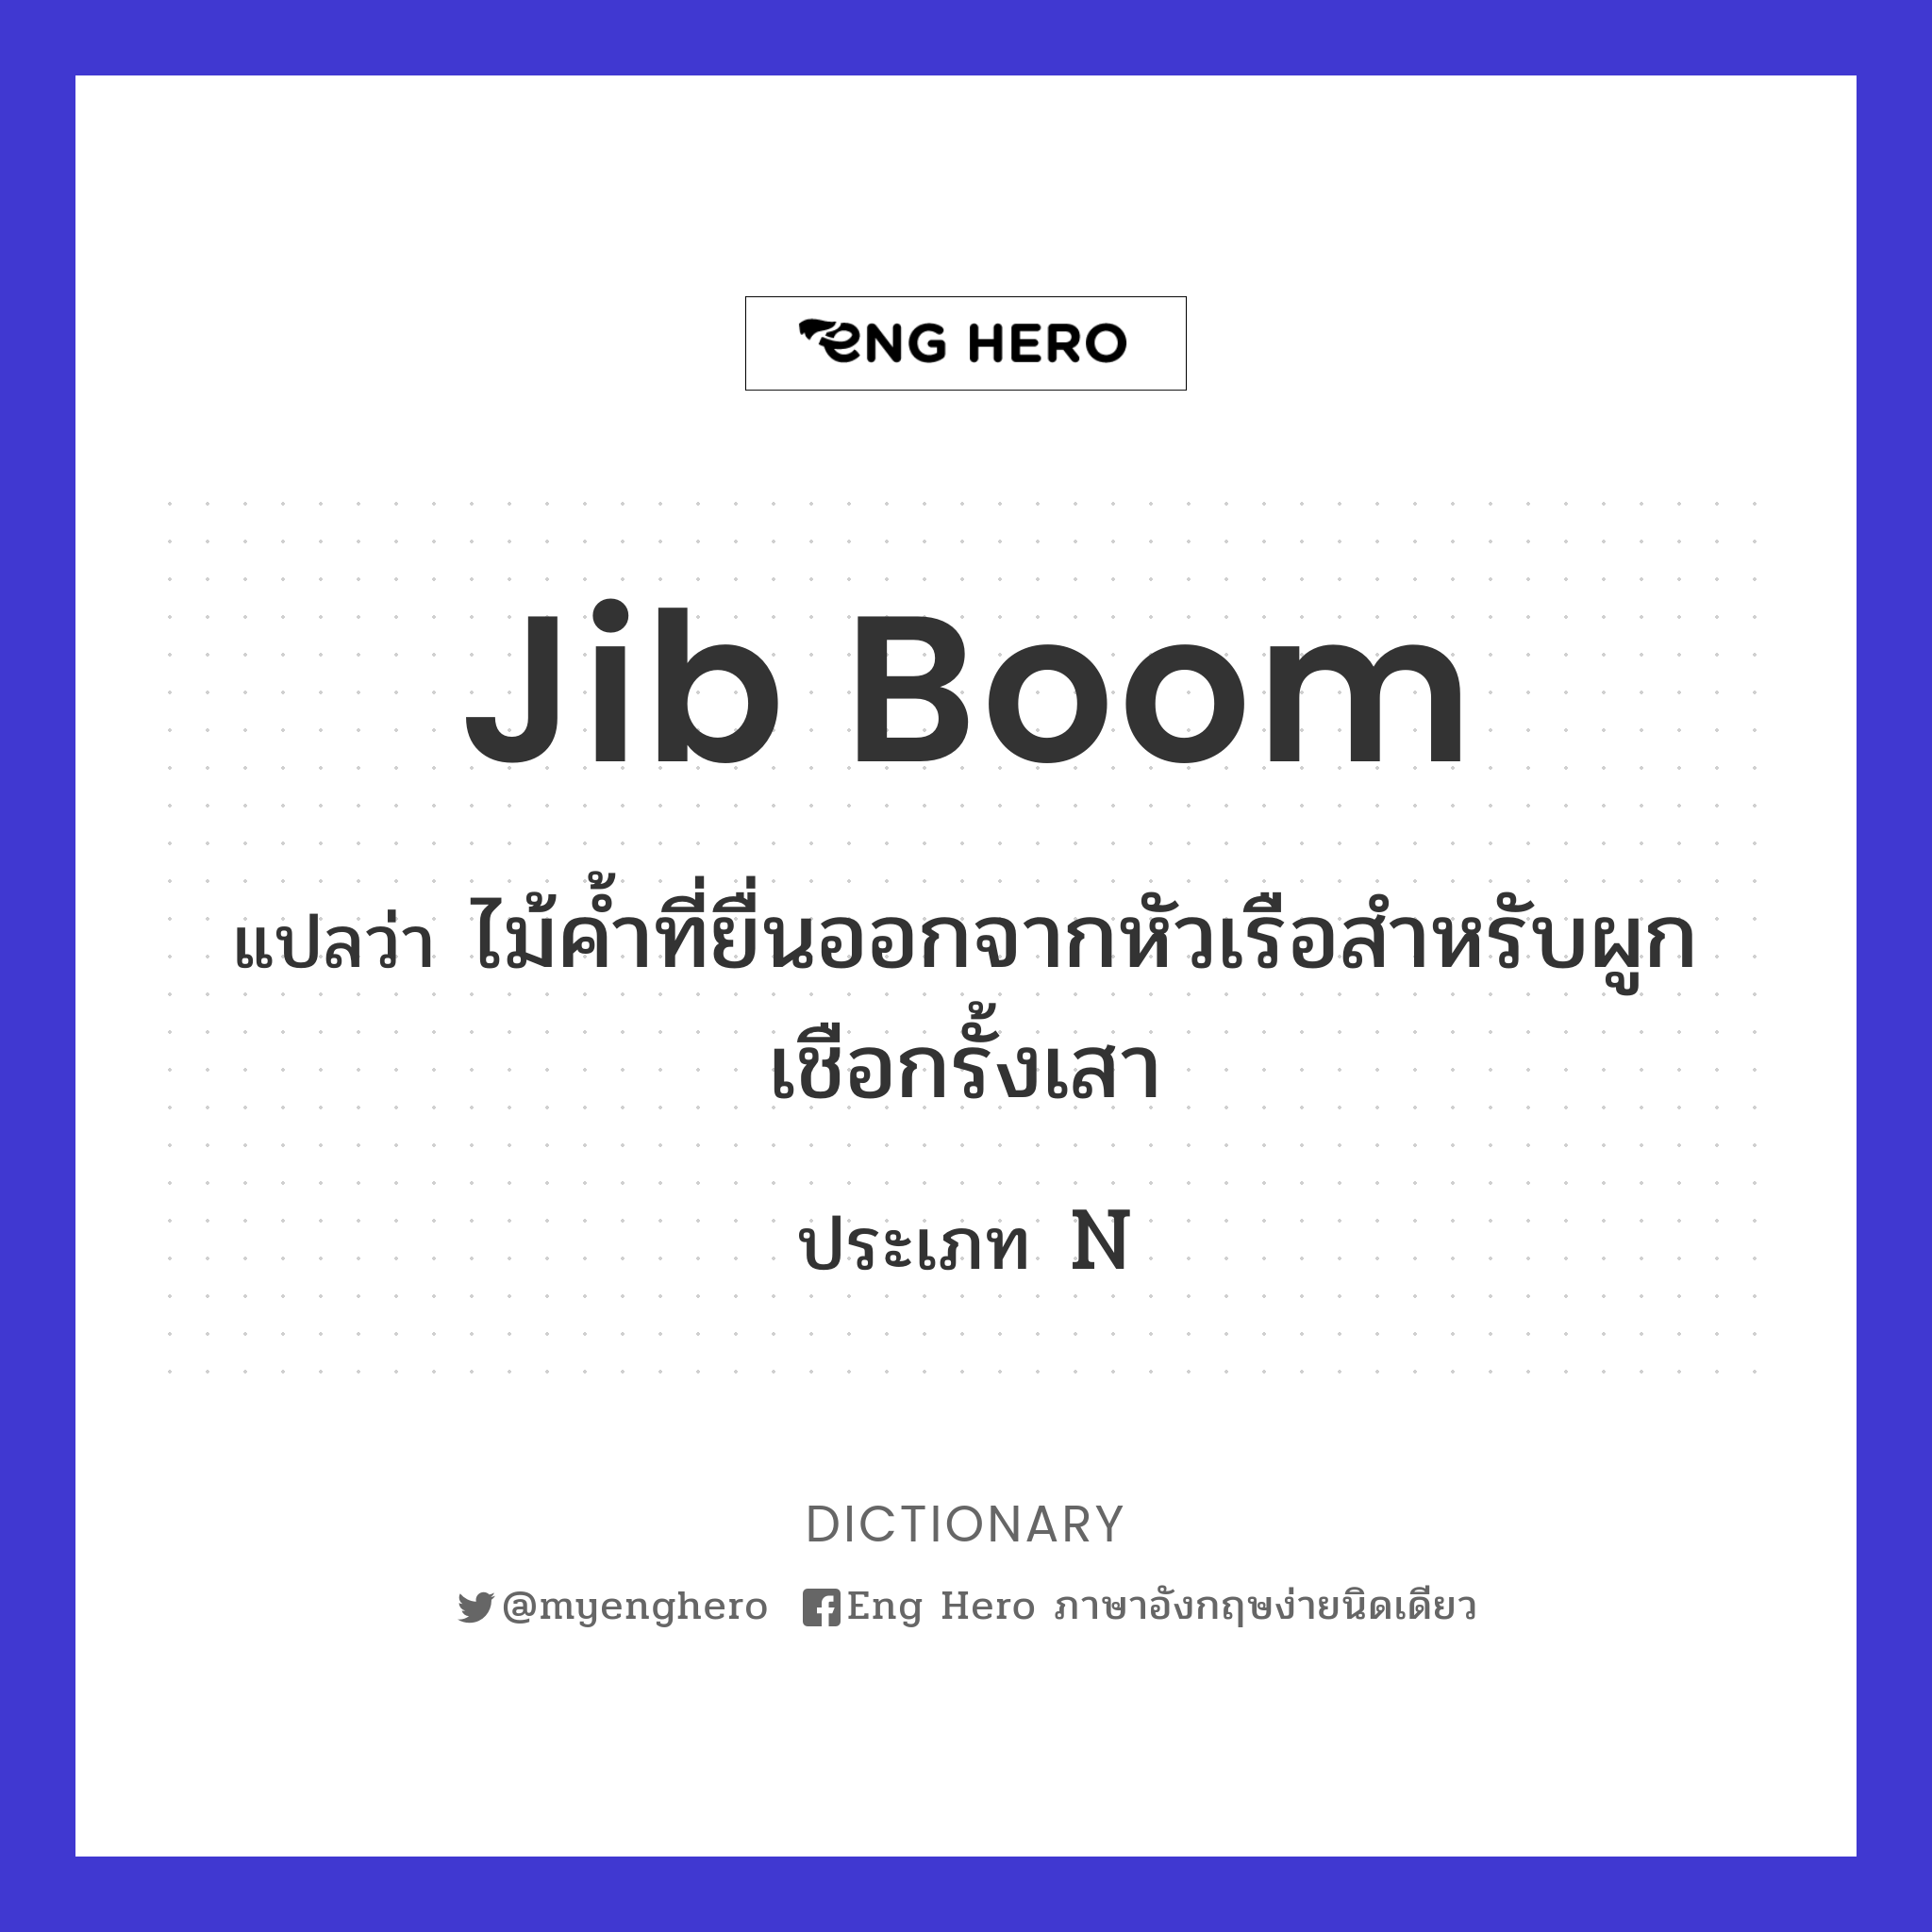 jib boom